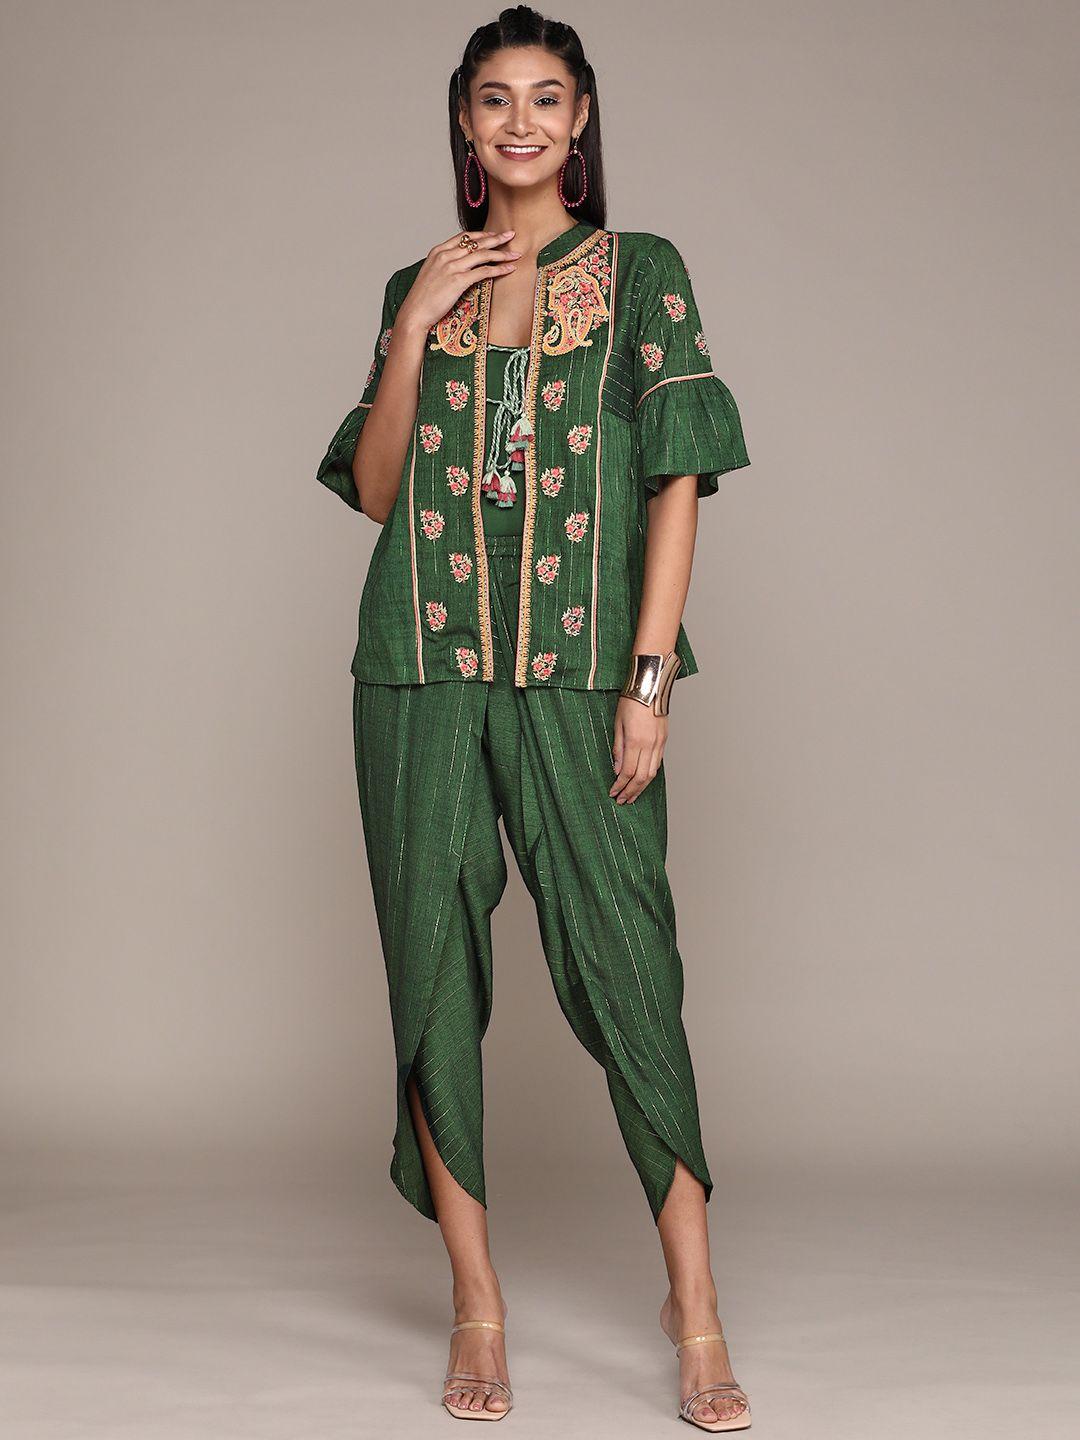 aarke ritu kumar women green & silver striped co-ord set with ethnic jacket